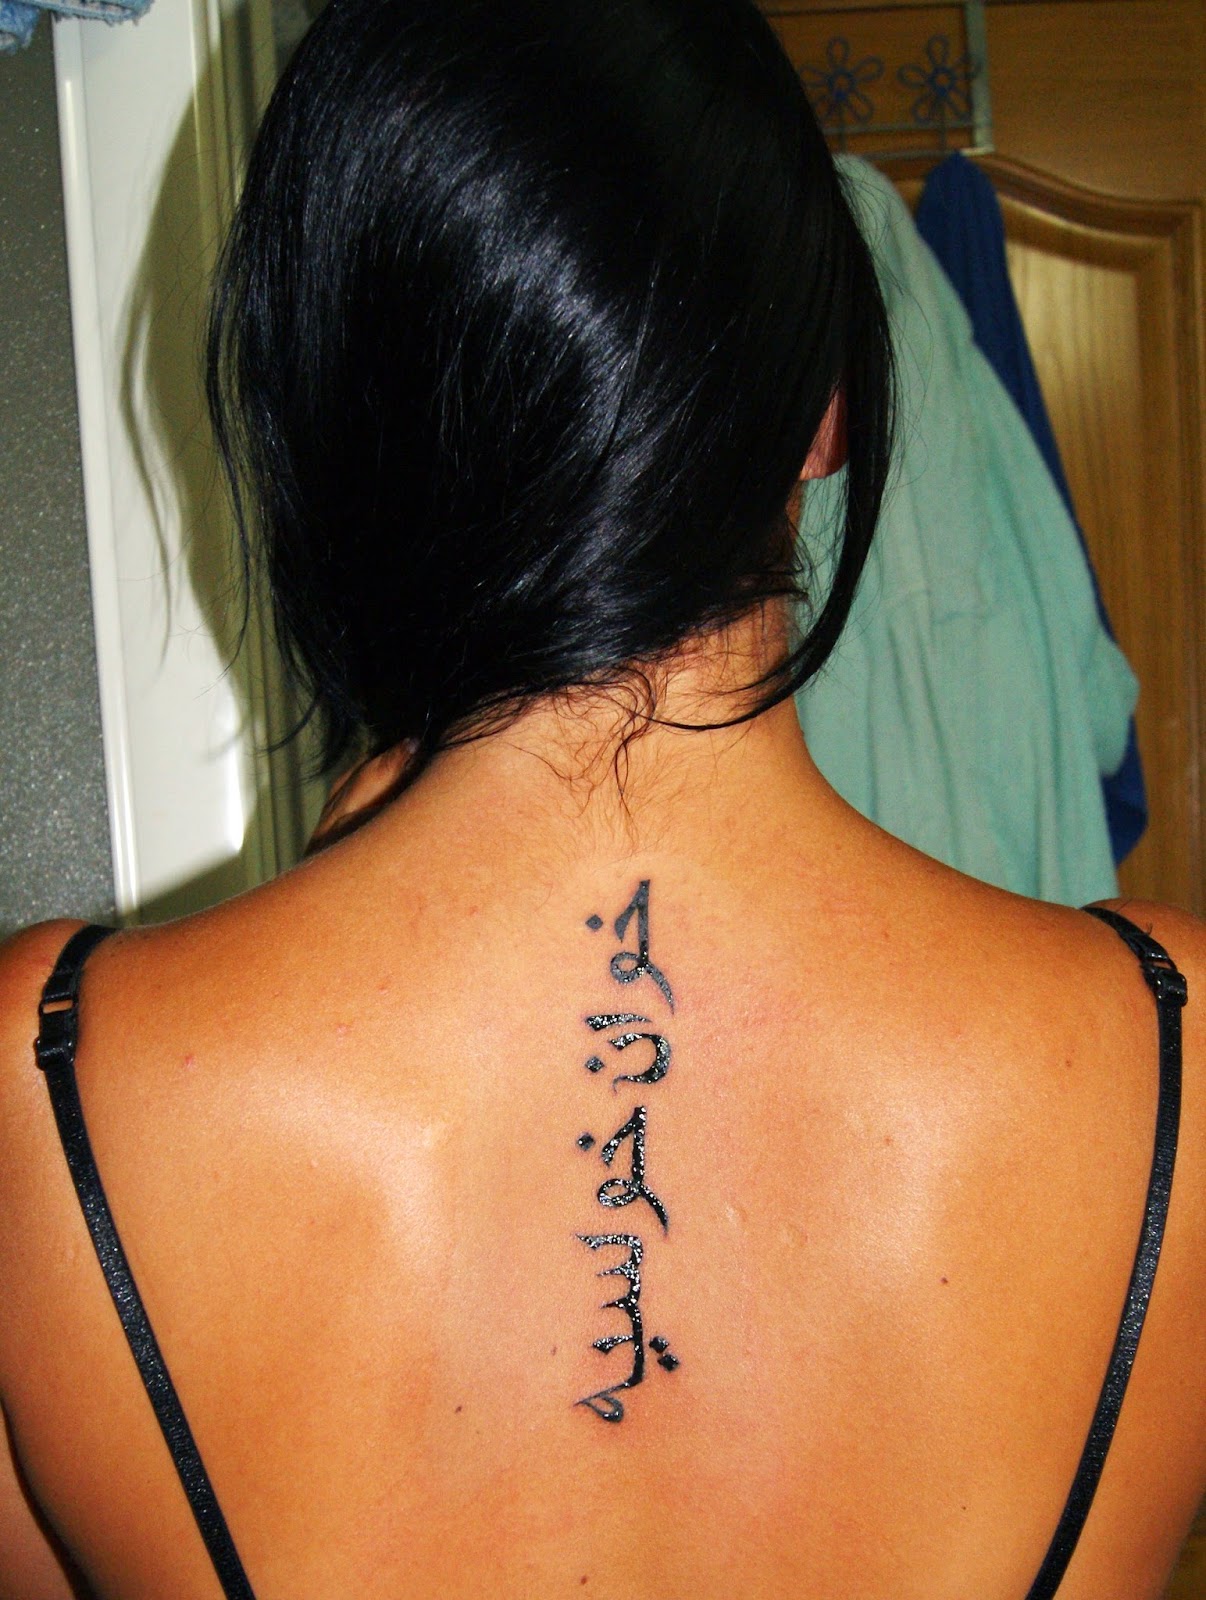 Spine Tattoo Arabic  Spine tattoos for women Tattoo fonts Stylish tattoo